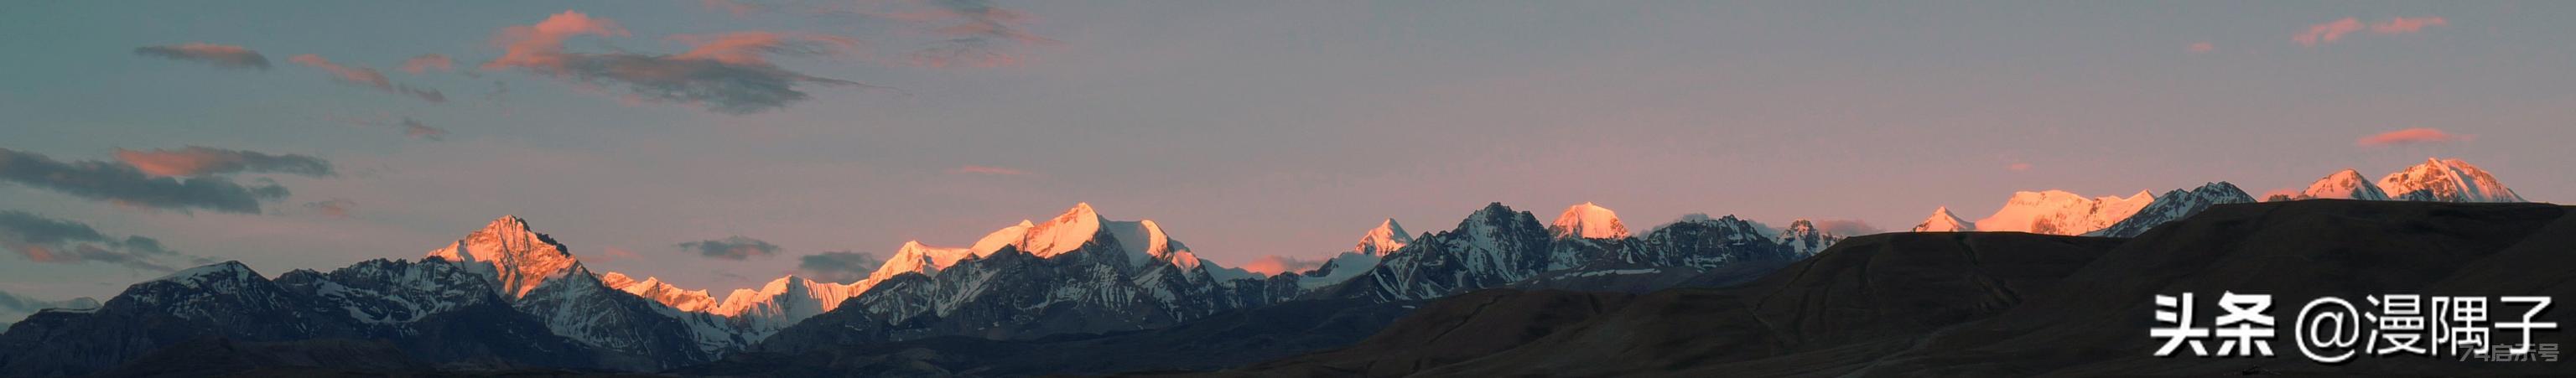 喜马拉雅十大沟谷，峻极天境里的文明秘道  第125张